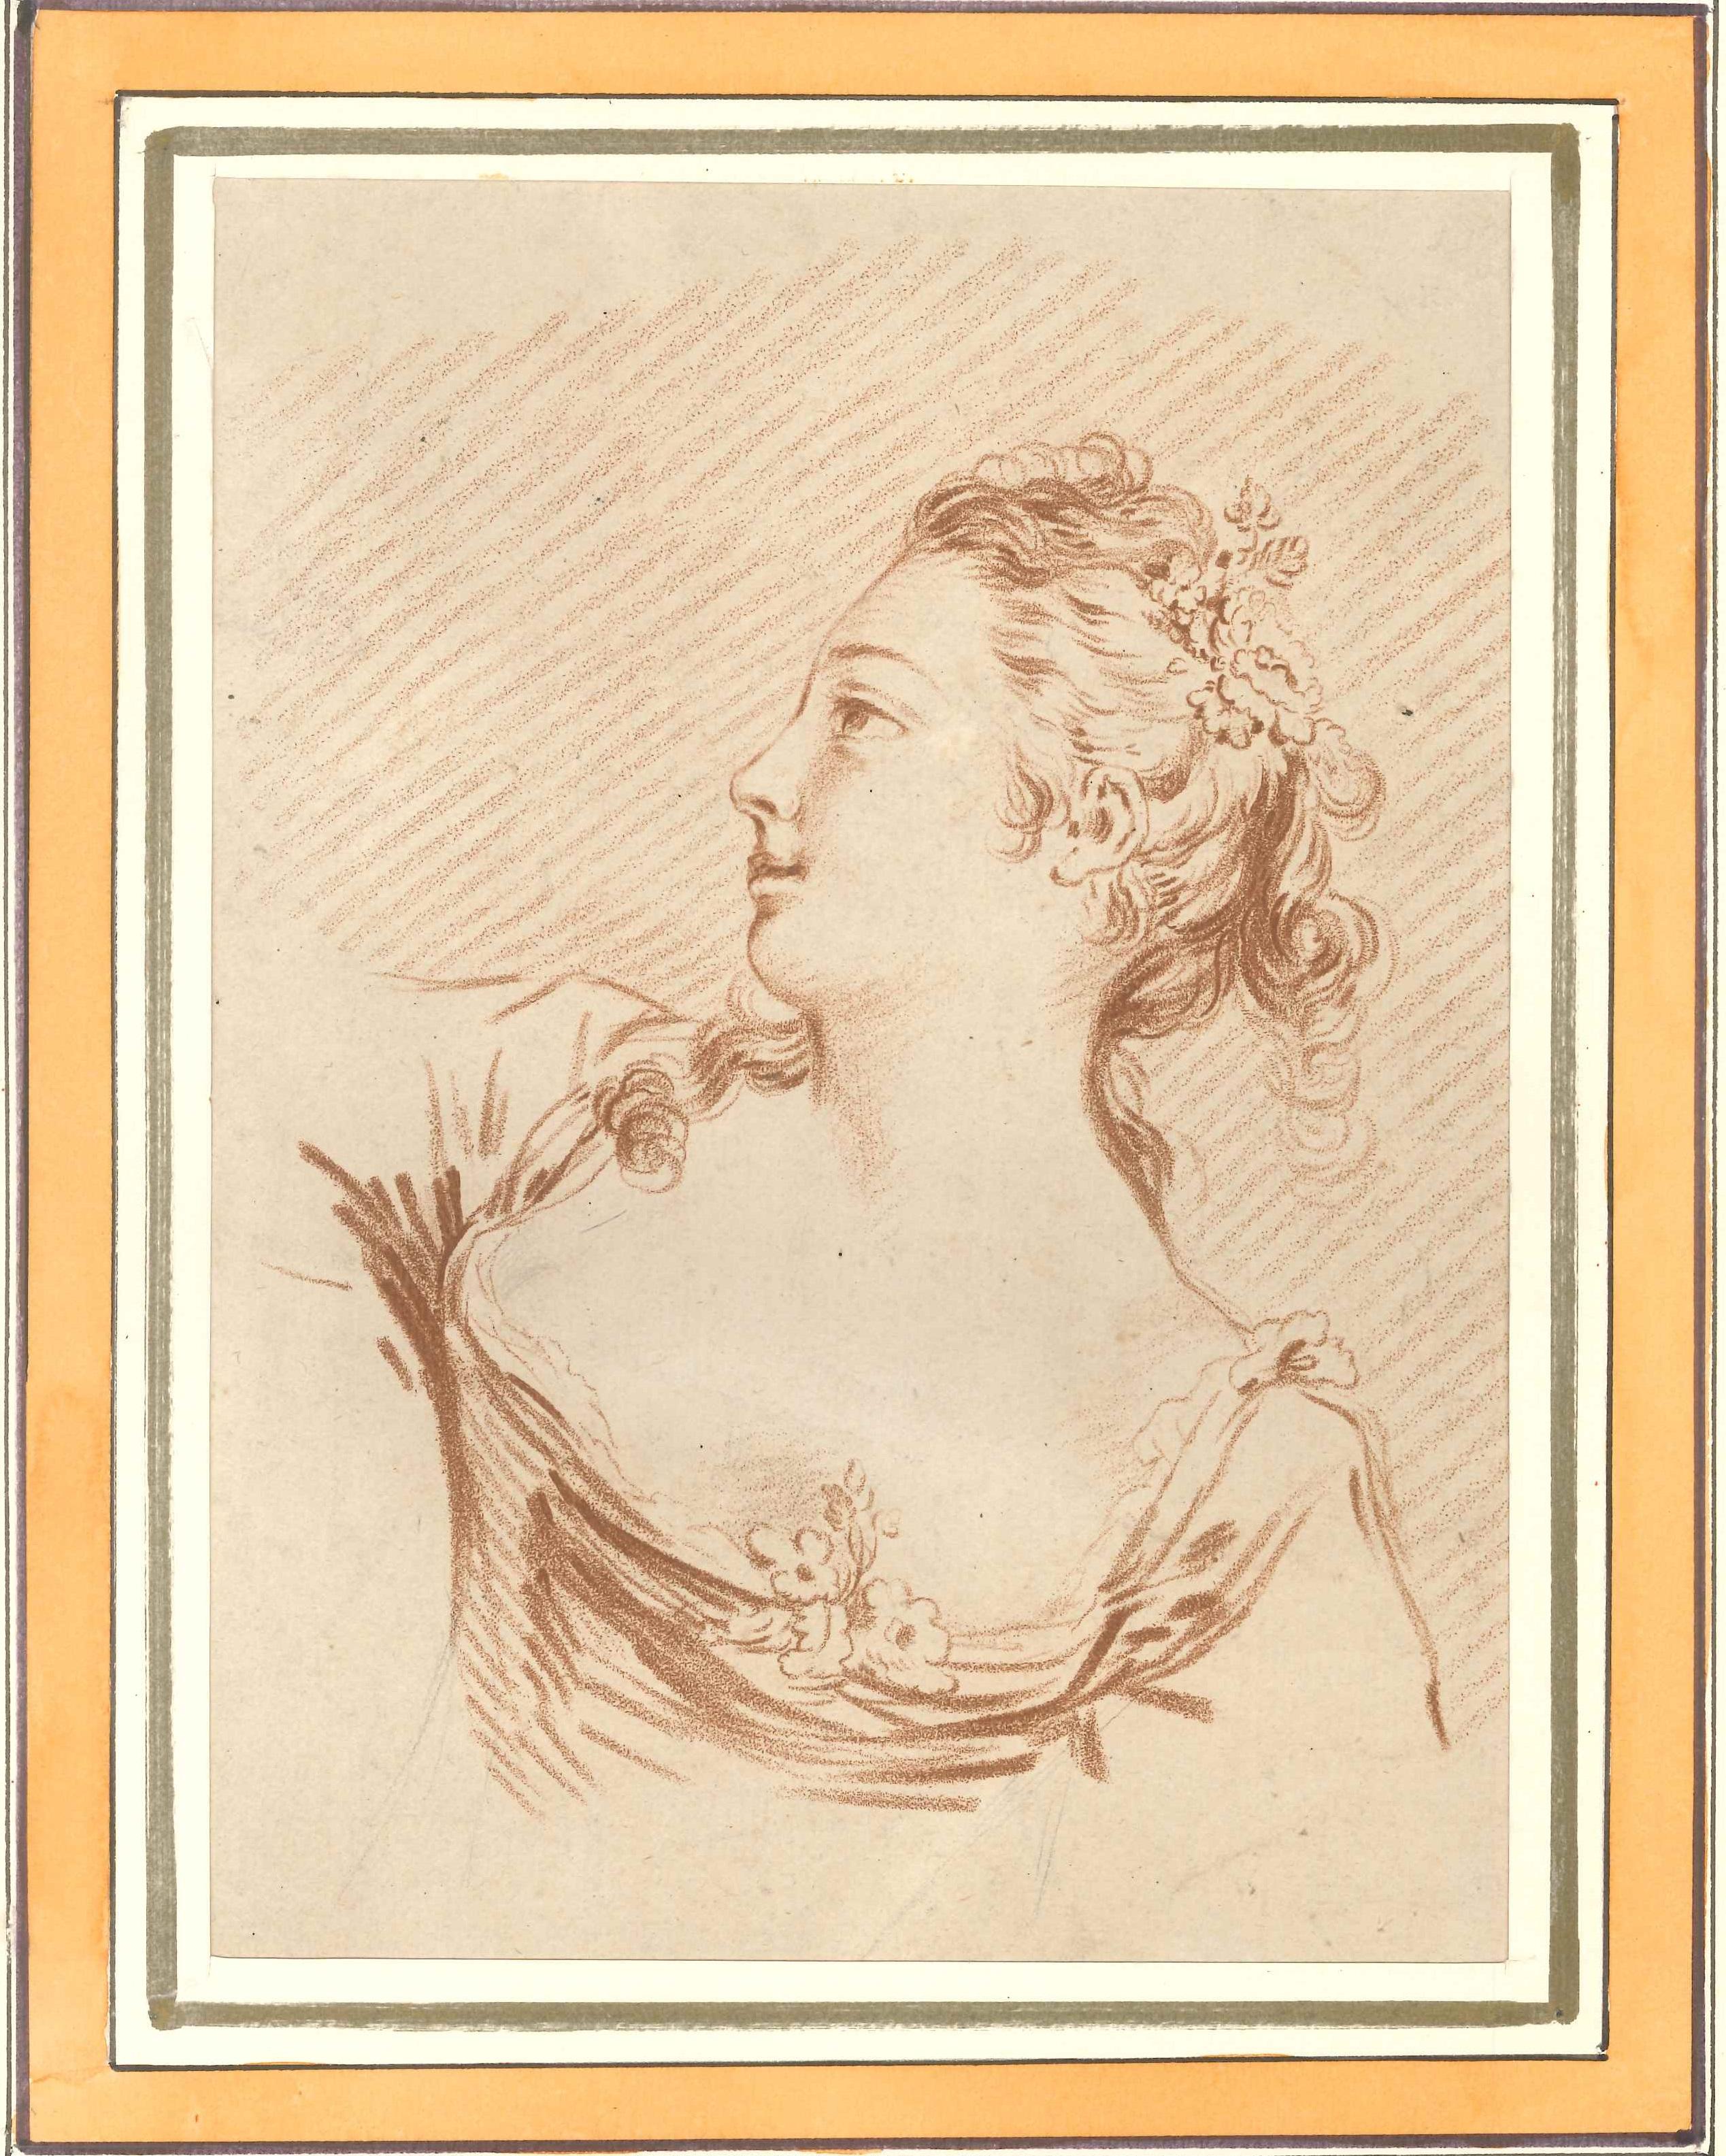 Feme Portrait - Original Lithograph by L-M Bonnet - End of 18th Century - Print by Louis-Marin Bonnet